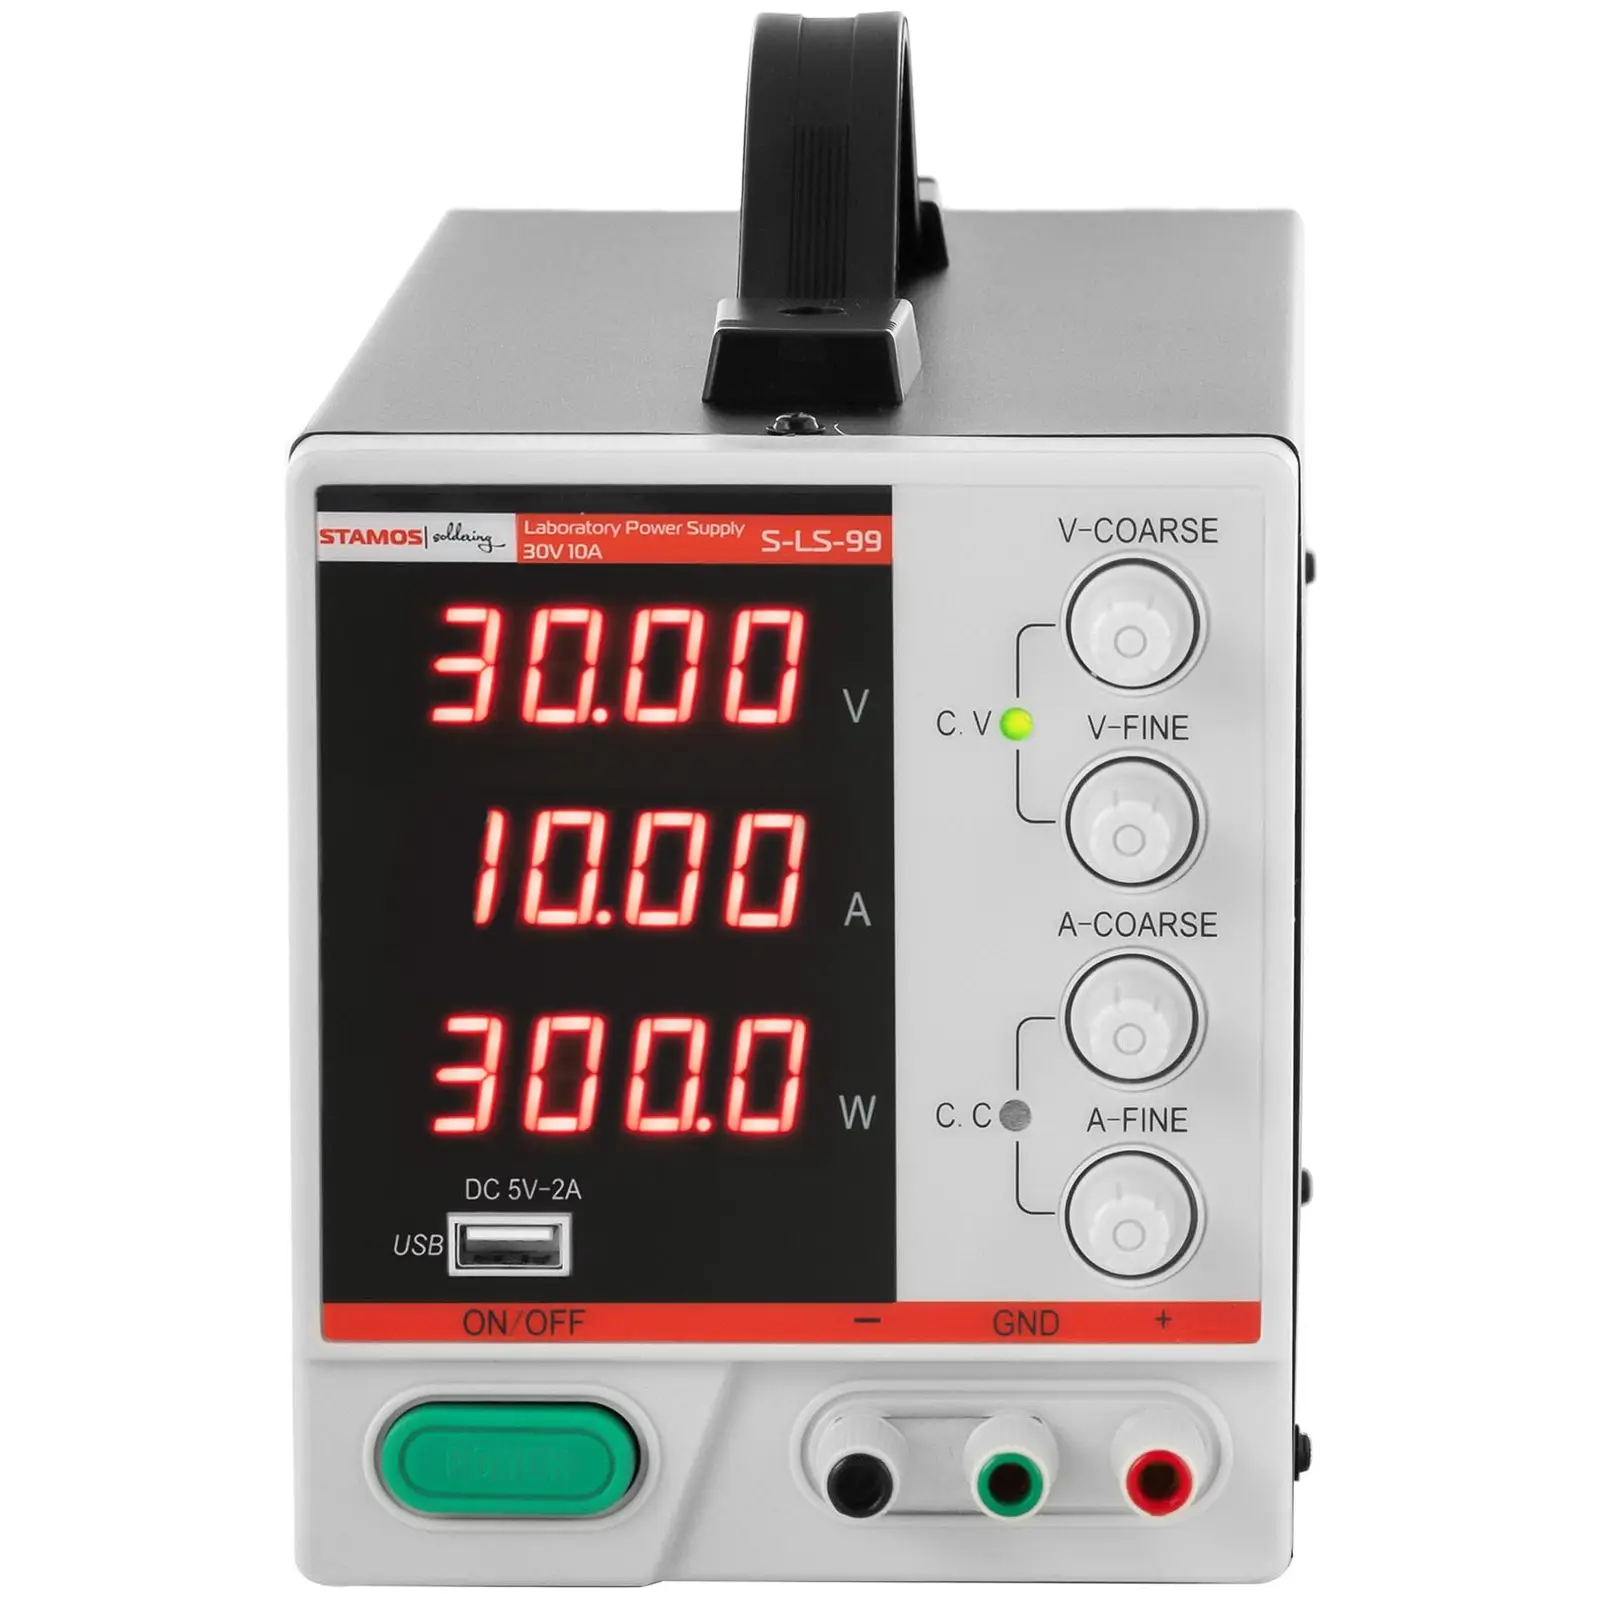 Fuente de alimentación para laboratorio - 0 - 30 V - 0 - 10 A DC - 300 W - pantalla LED de cuatro dígitos - UBS